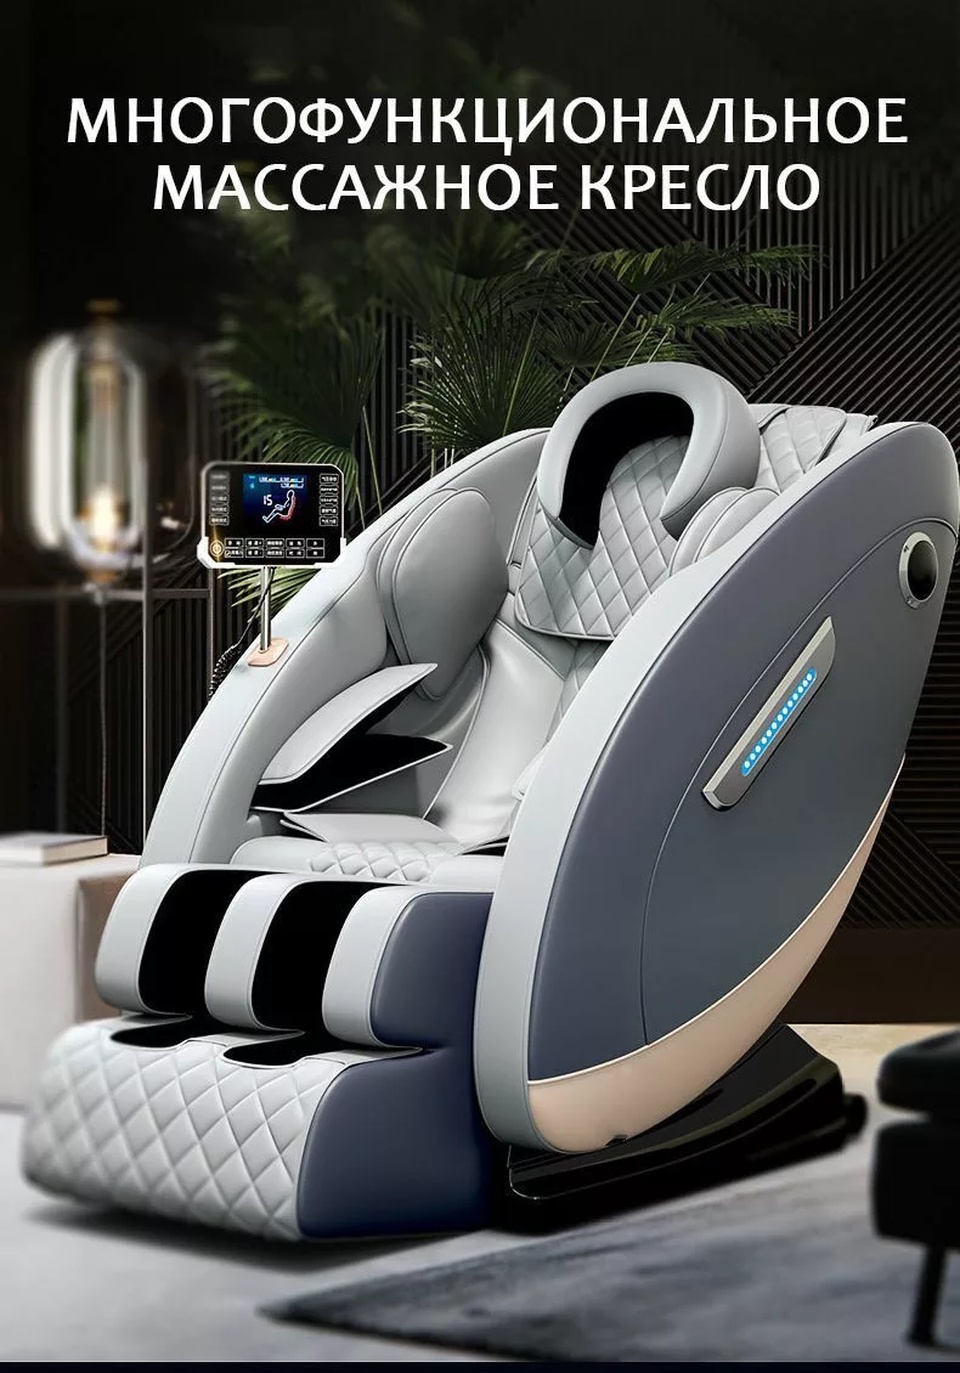 Массажное кресло 300C-D Серое - 75 000 ₽, заказать онлайн.